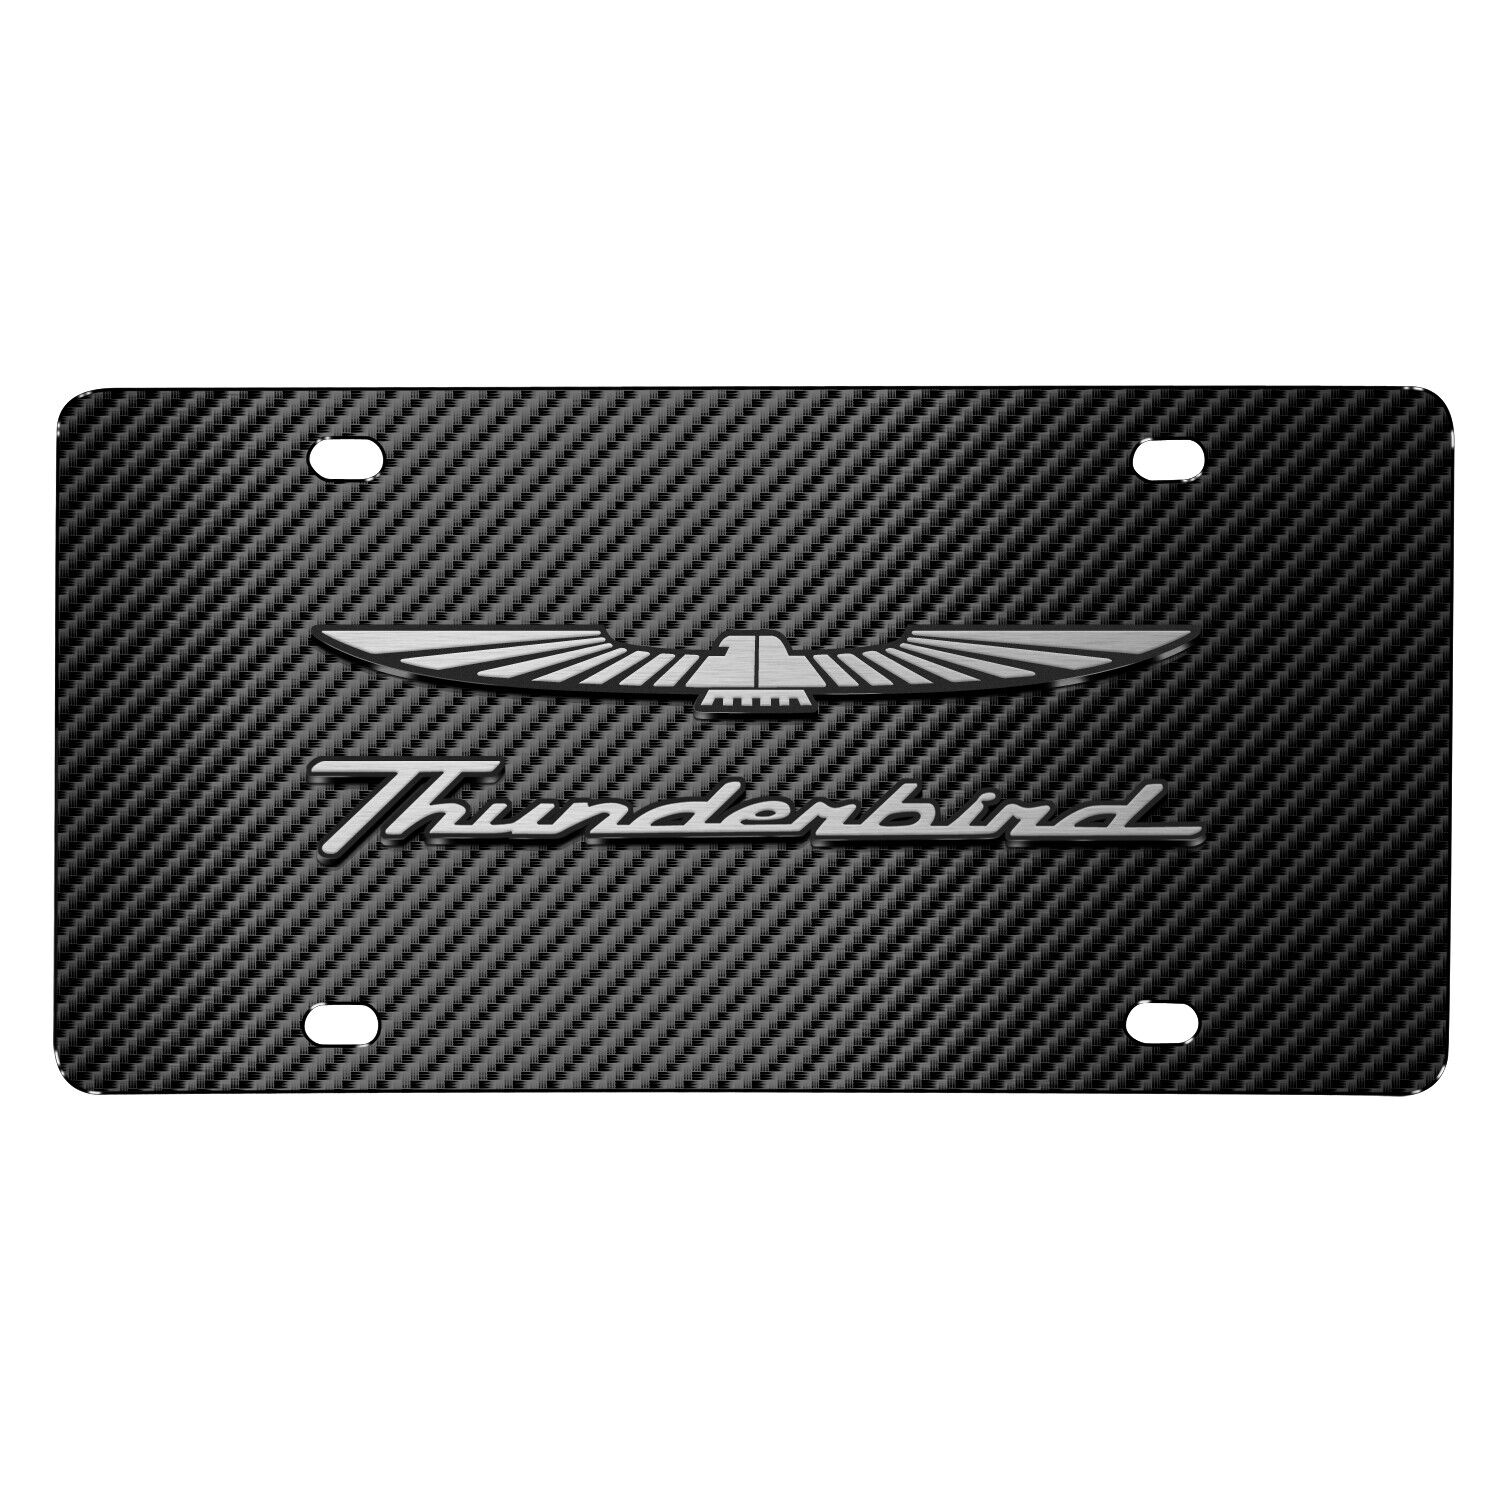 Ford Thunderbird 3D Logo Black Carbon Fiber Patten Stainless Steel License Plate